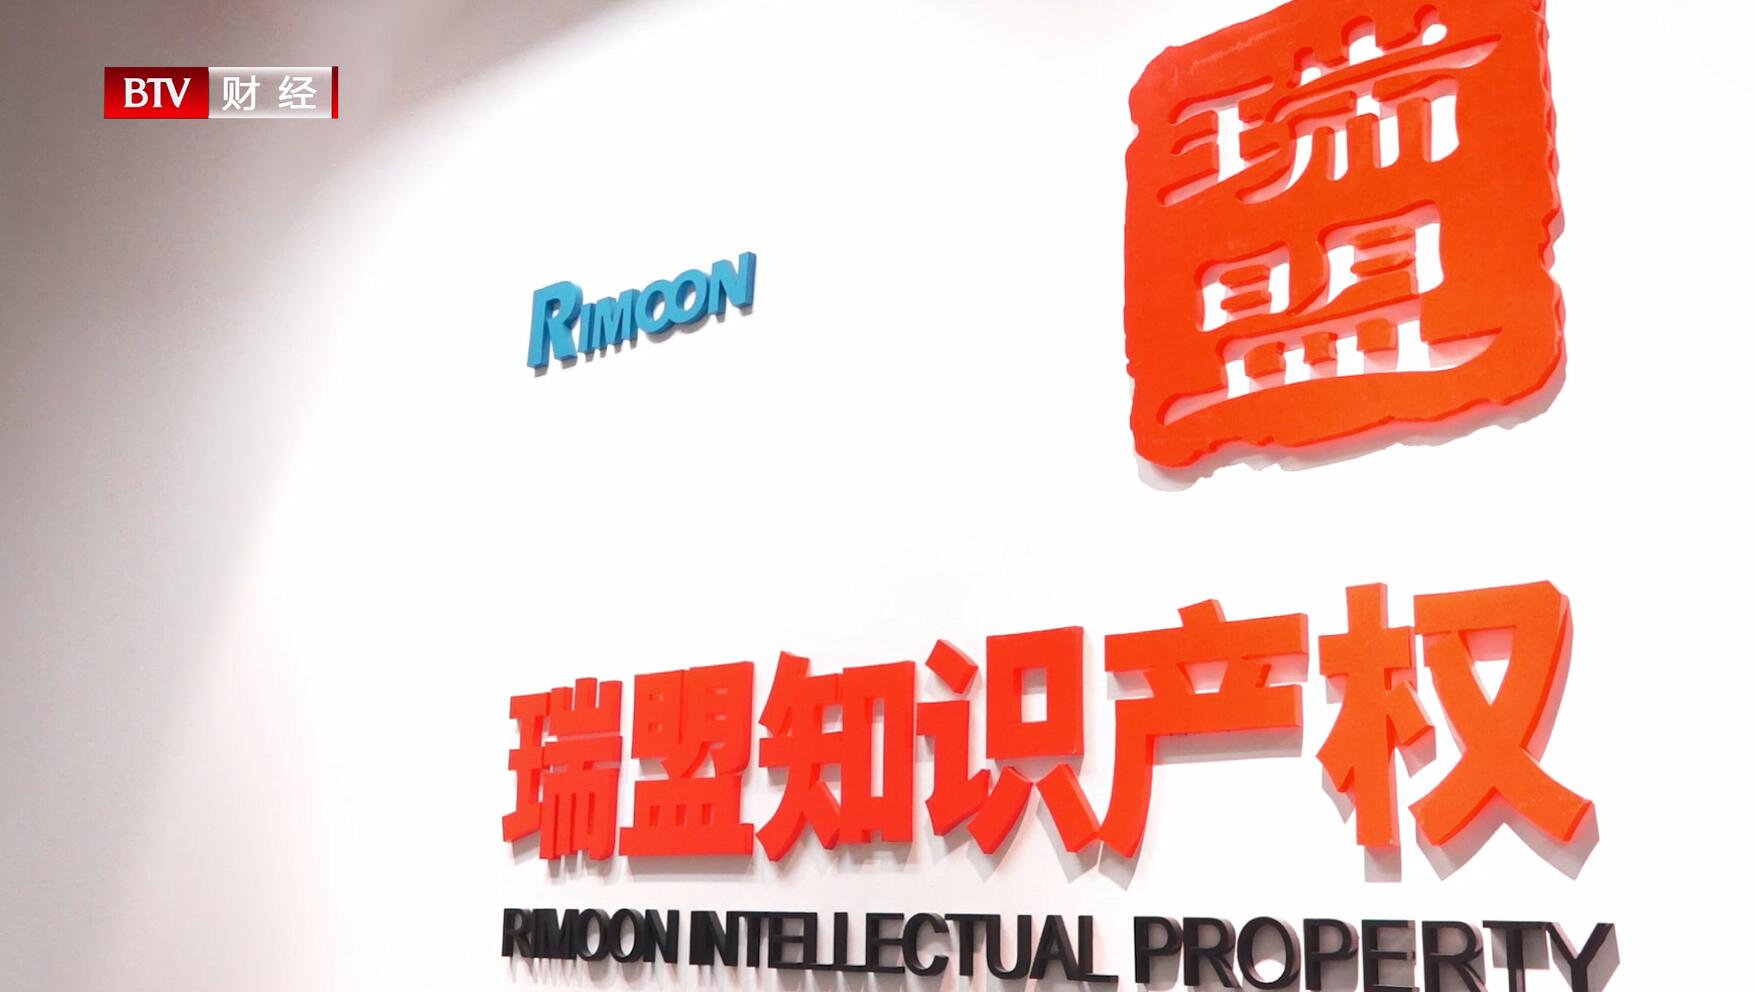 Beijing through train broadcast on Beijing Financial Channel: Rimoon Intellectual Property Agency, Ltd